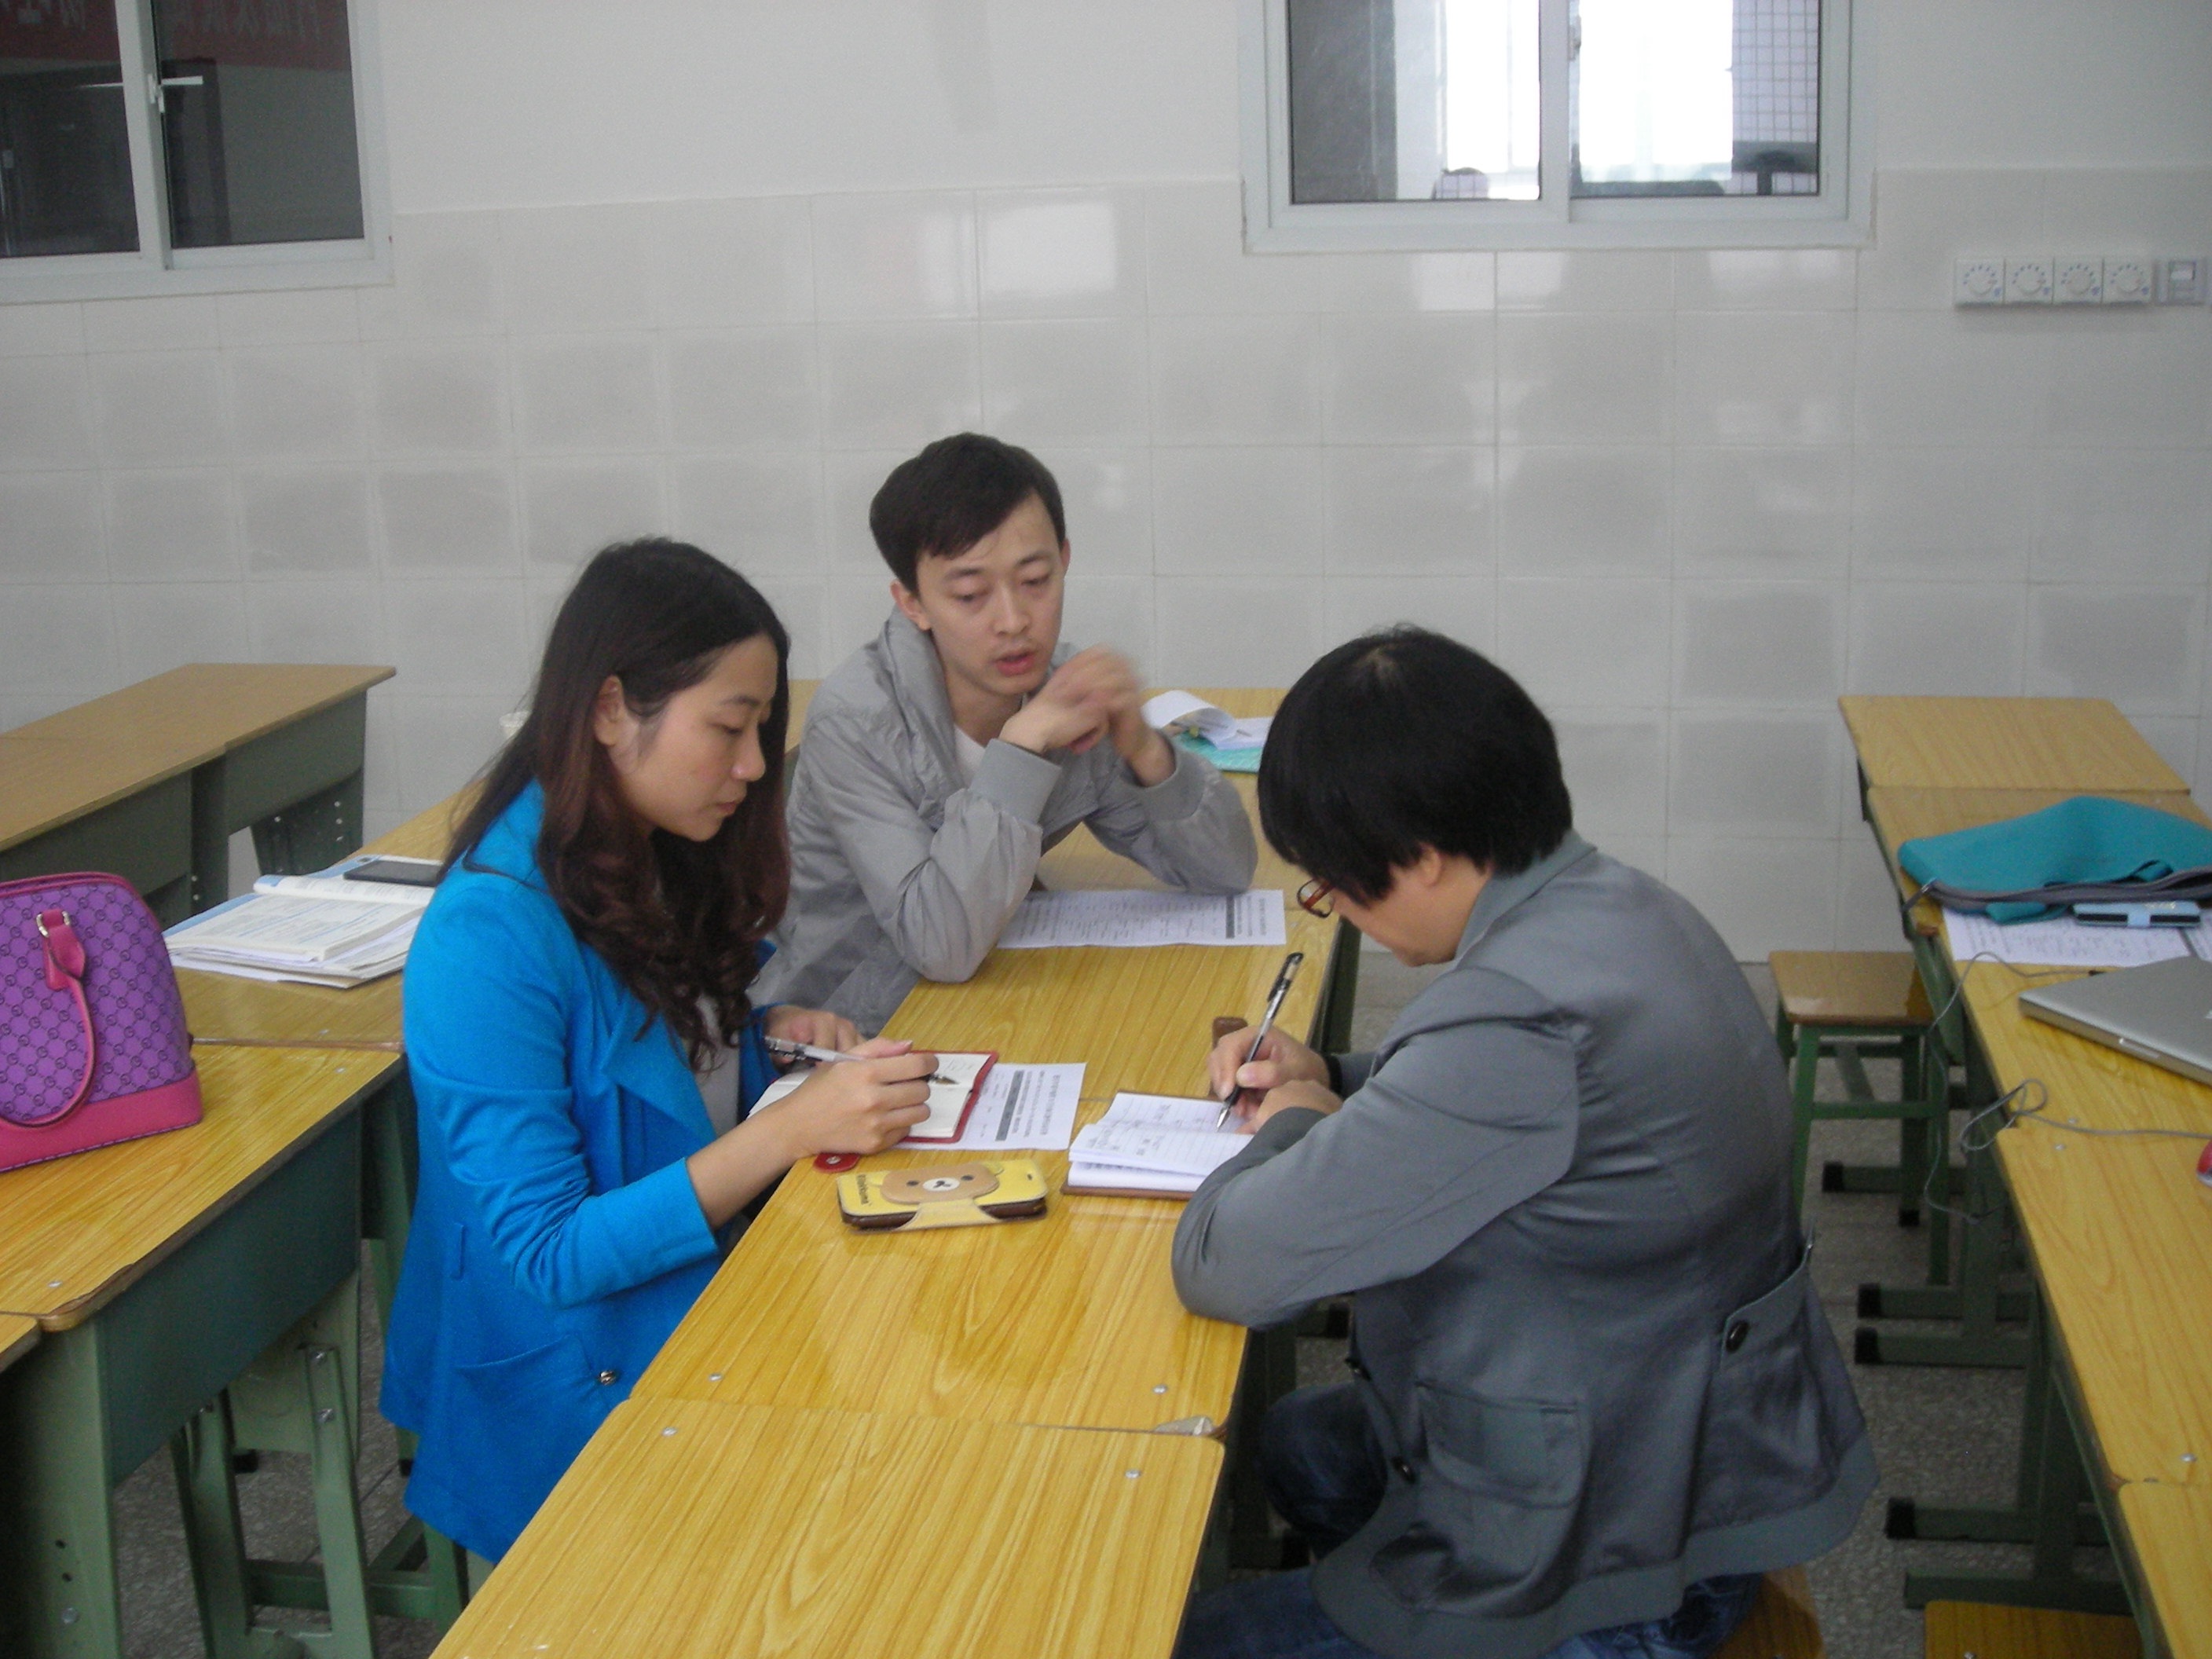 柯丁荣、王龙两位老师正在接受方略专家的备课指导